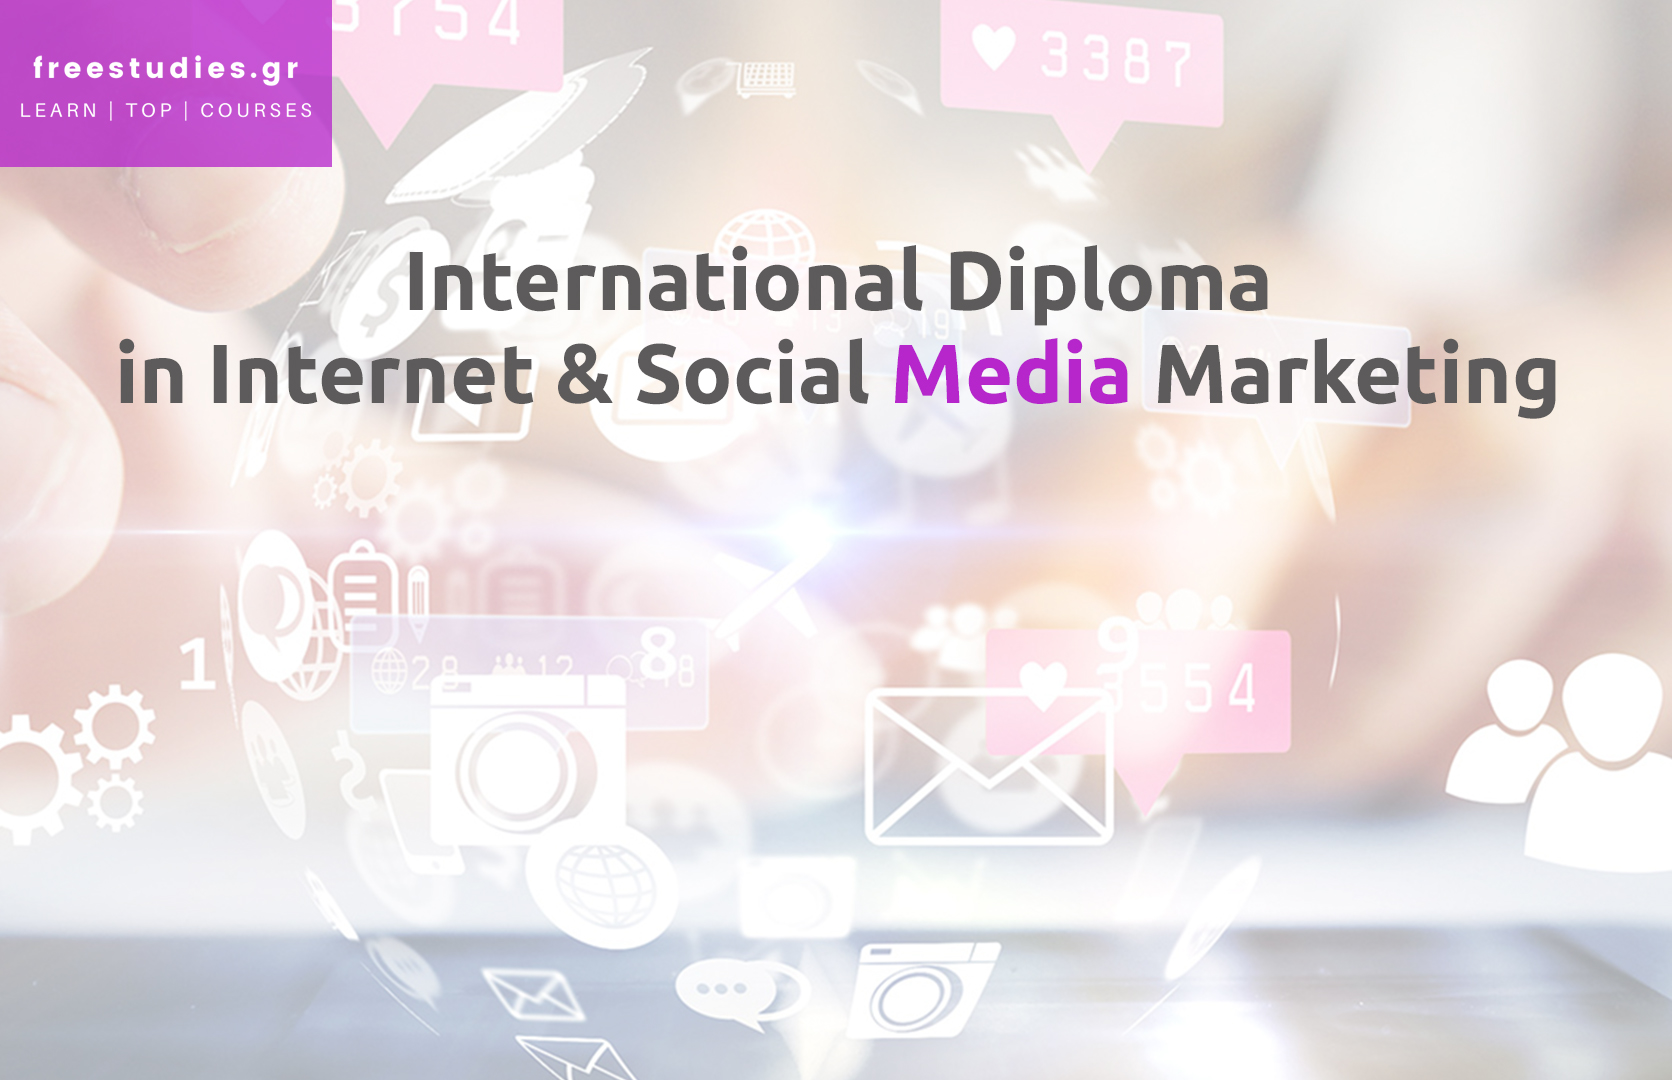 International Diploma in Internet & Social Media Marketing